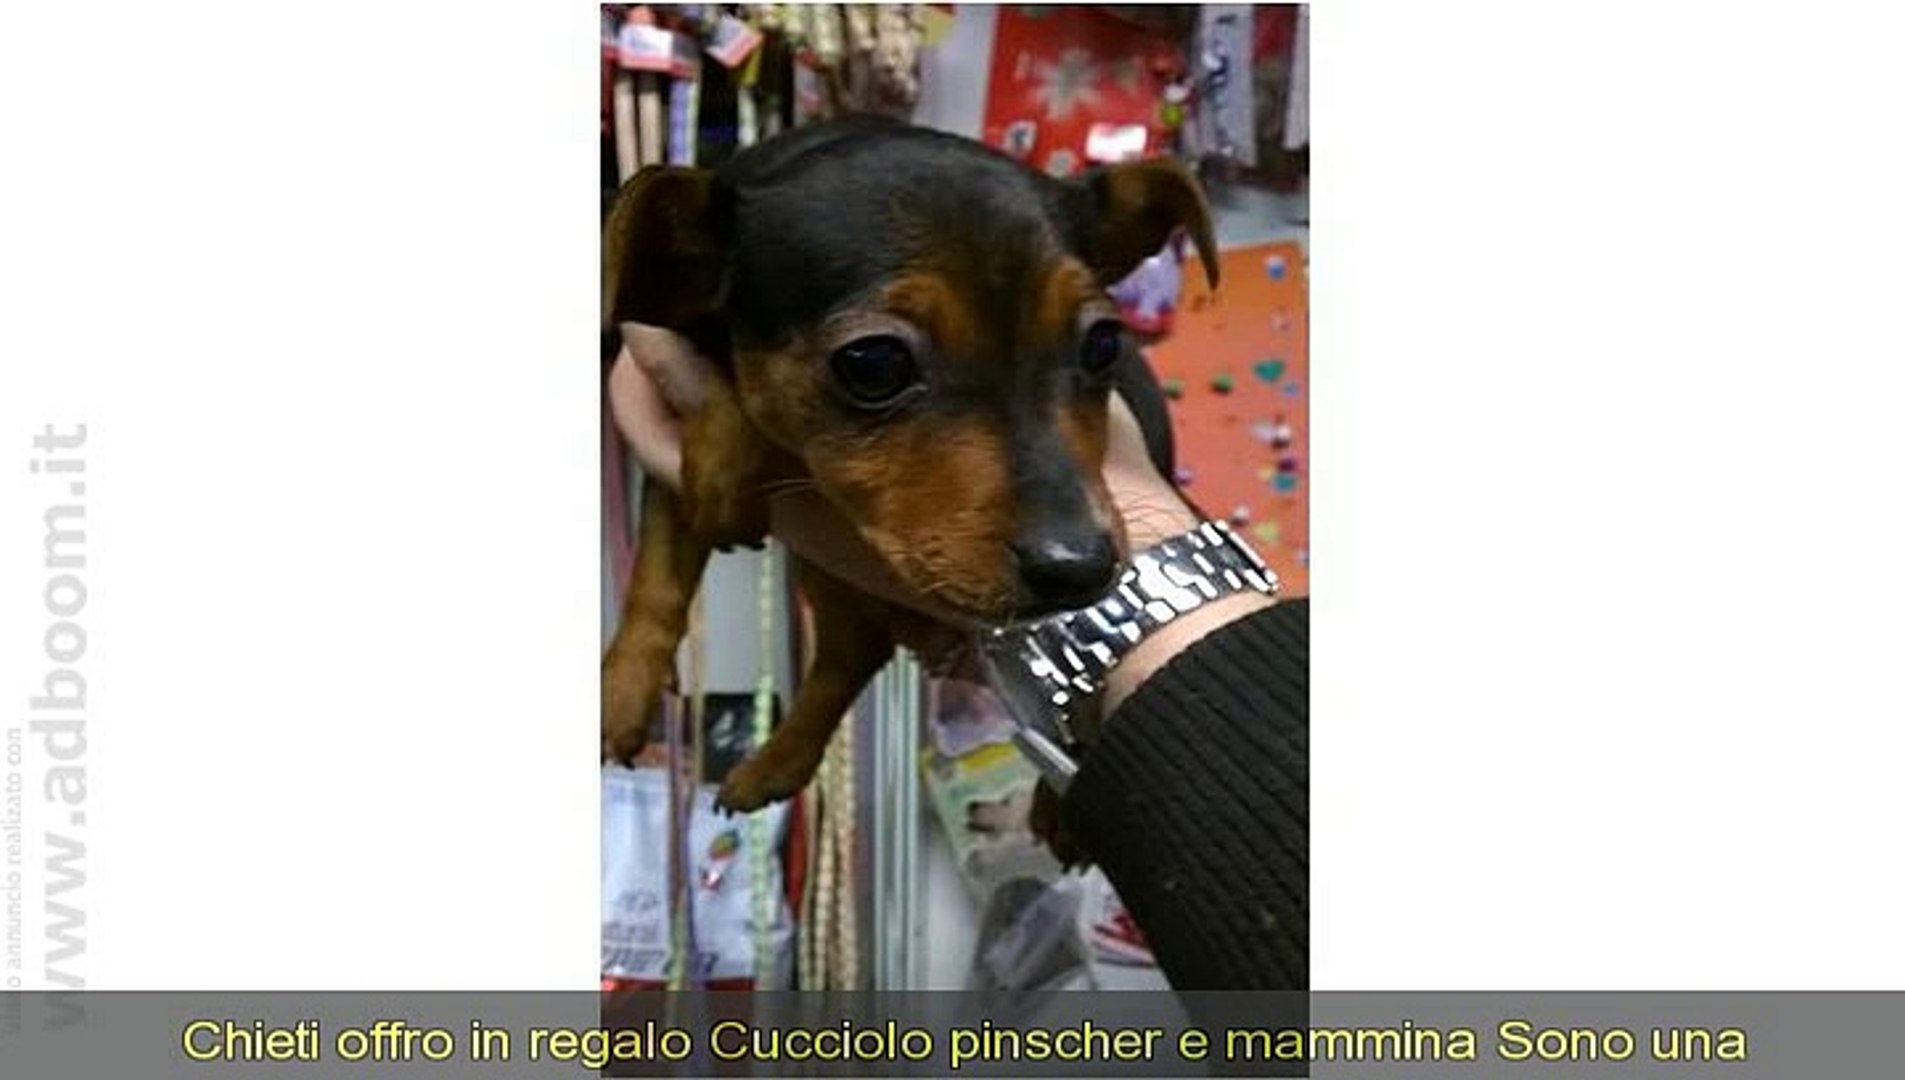 CHIETI, VASTO IN REGALO CUCCIOLO PINSCHER E MAMMINA - Video Dailymotion